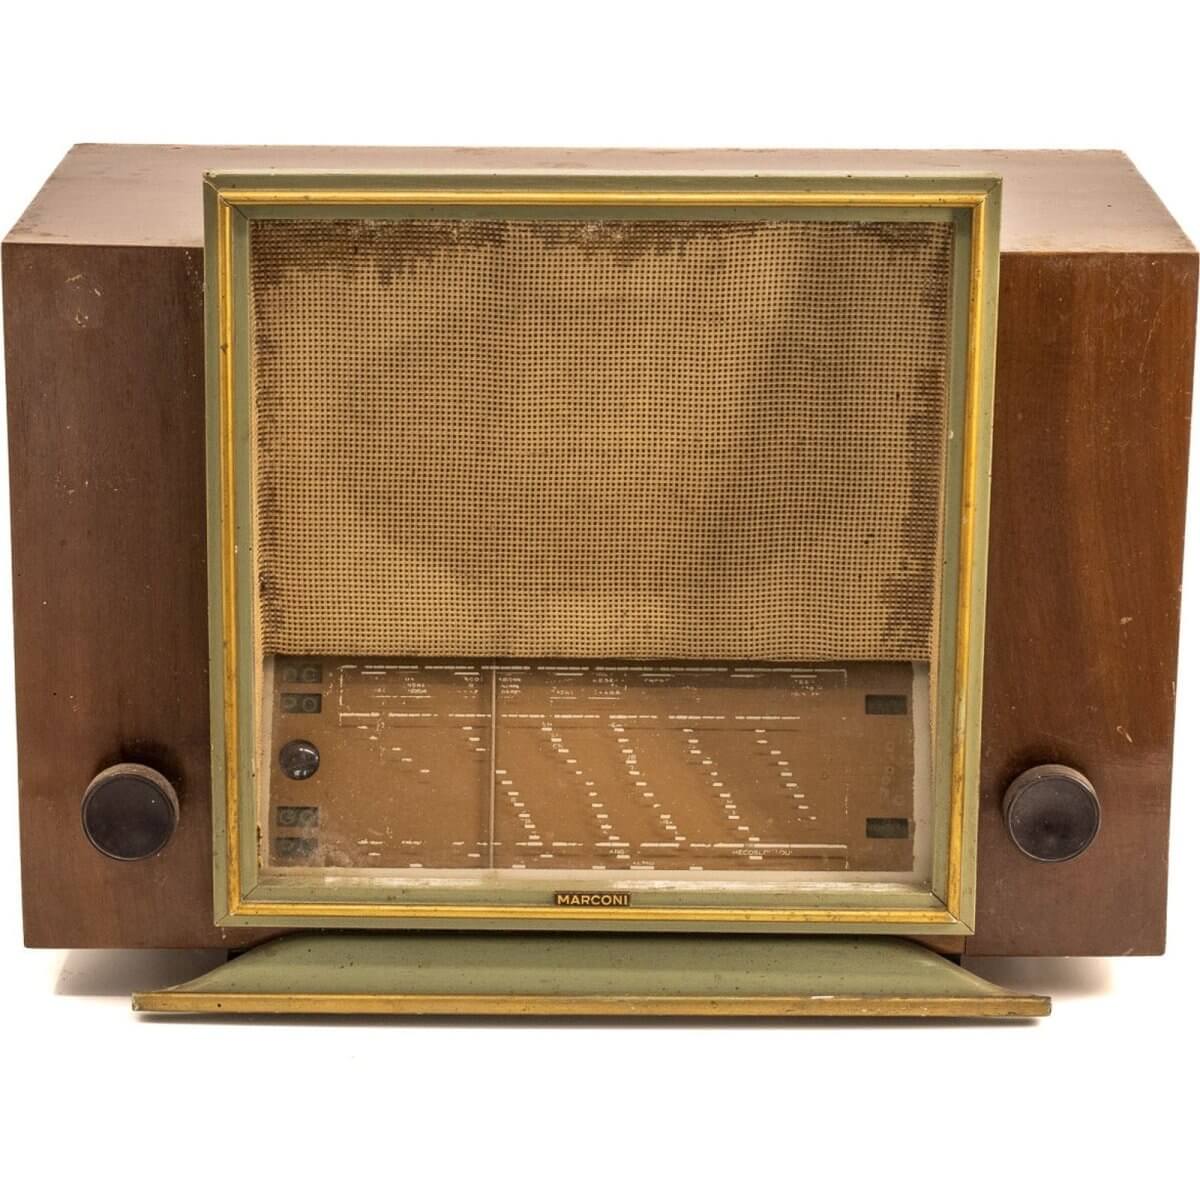 Radio Bluetooth Marconi Vintage 50’S enceinte connectée française haut de gamme absolument prodige radio vintage